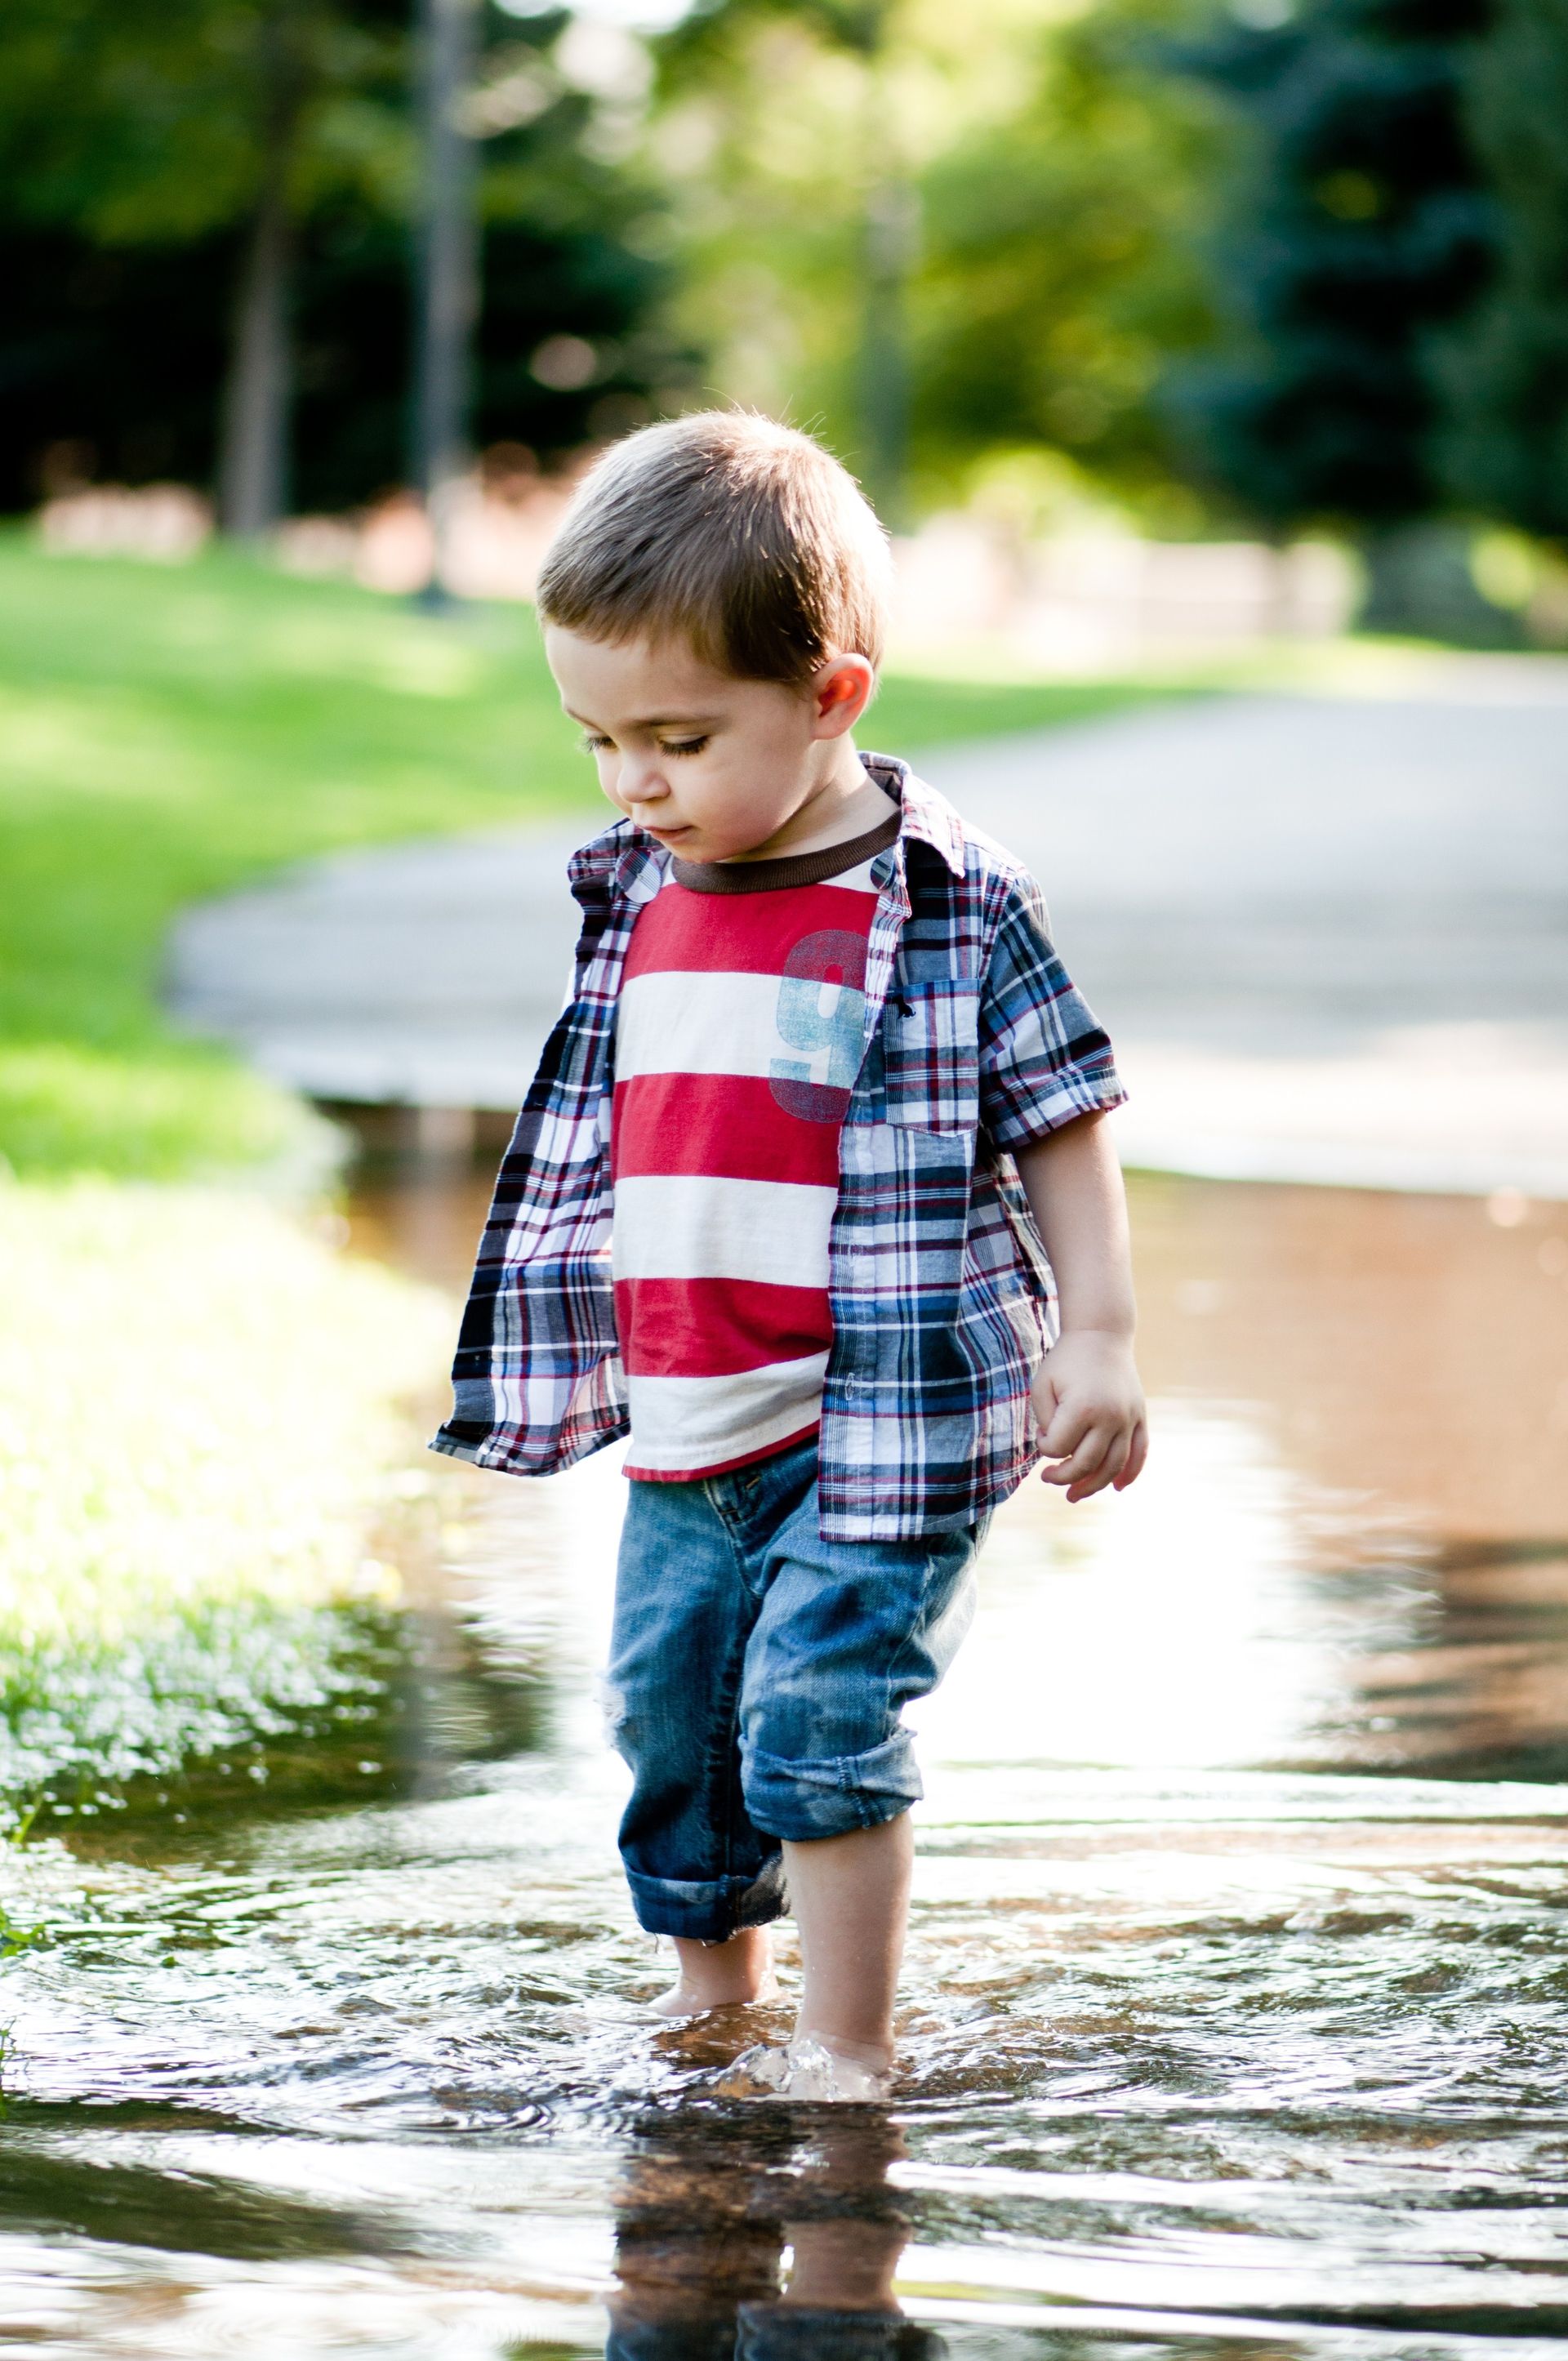 A toddler boy walking in water.